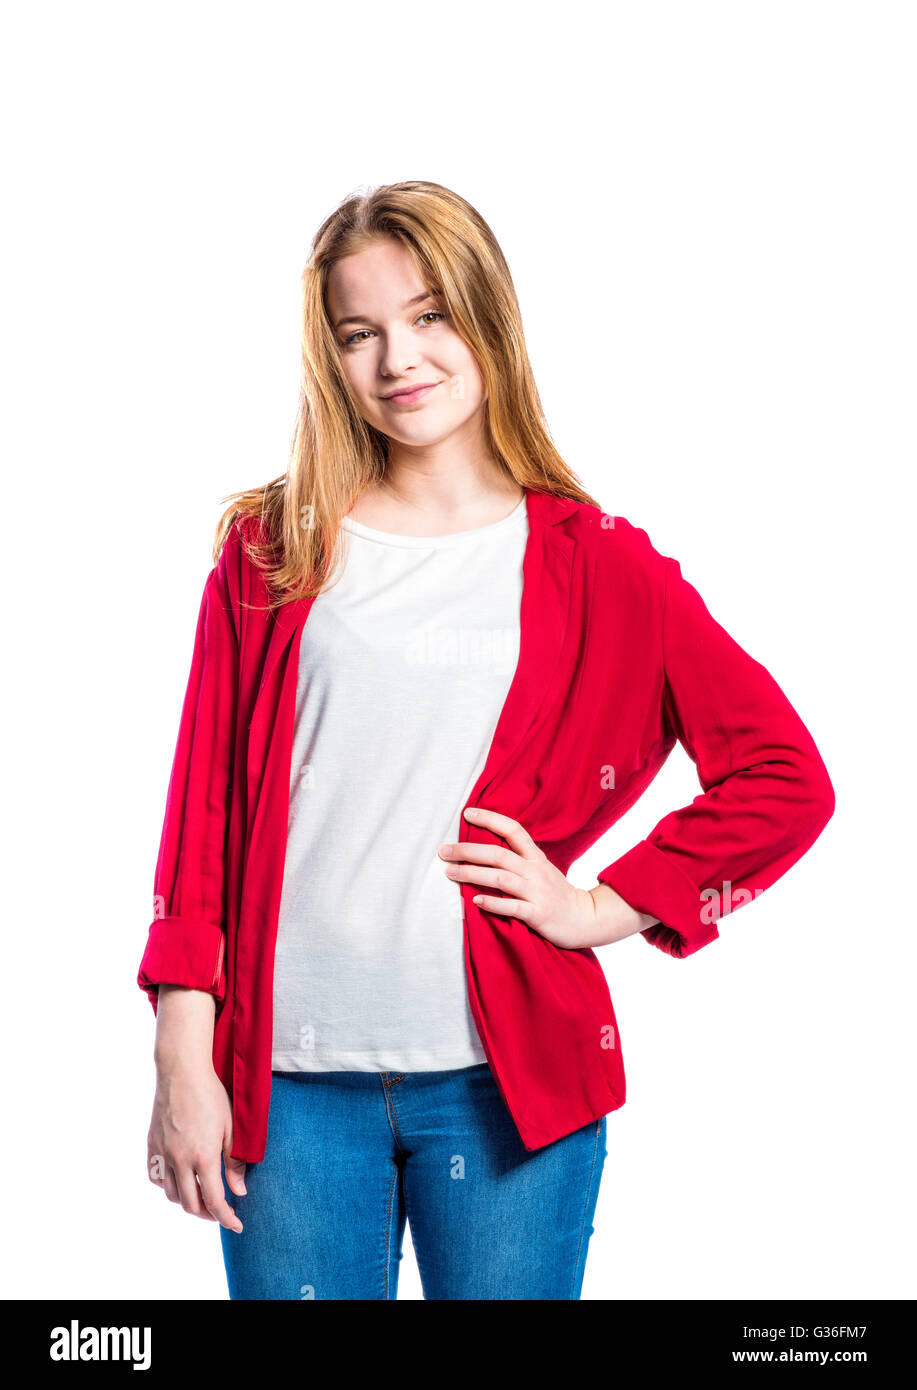 Respeto a ti mismo Posteridad Oh Chica en jeans y chaqueta roja, mujer, Foto de estudio Fotografía de stock  - Alamy